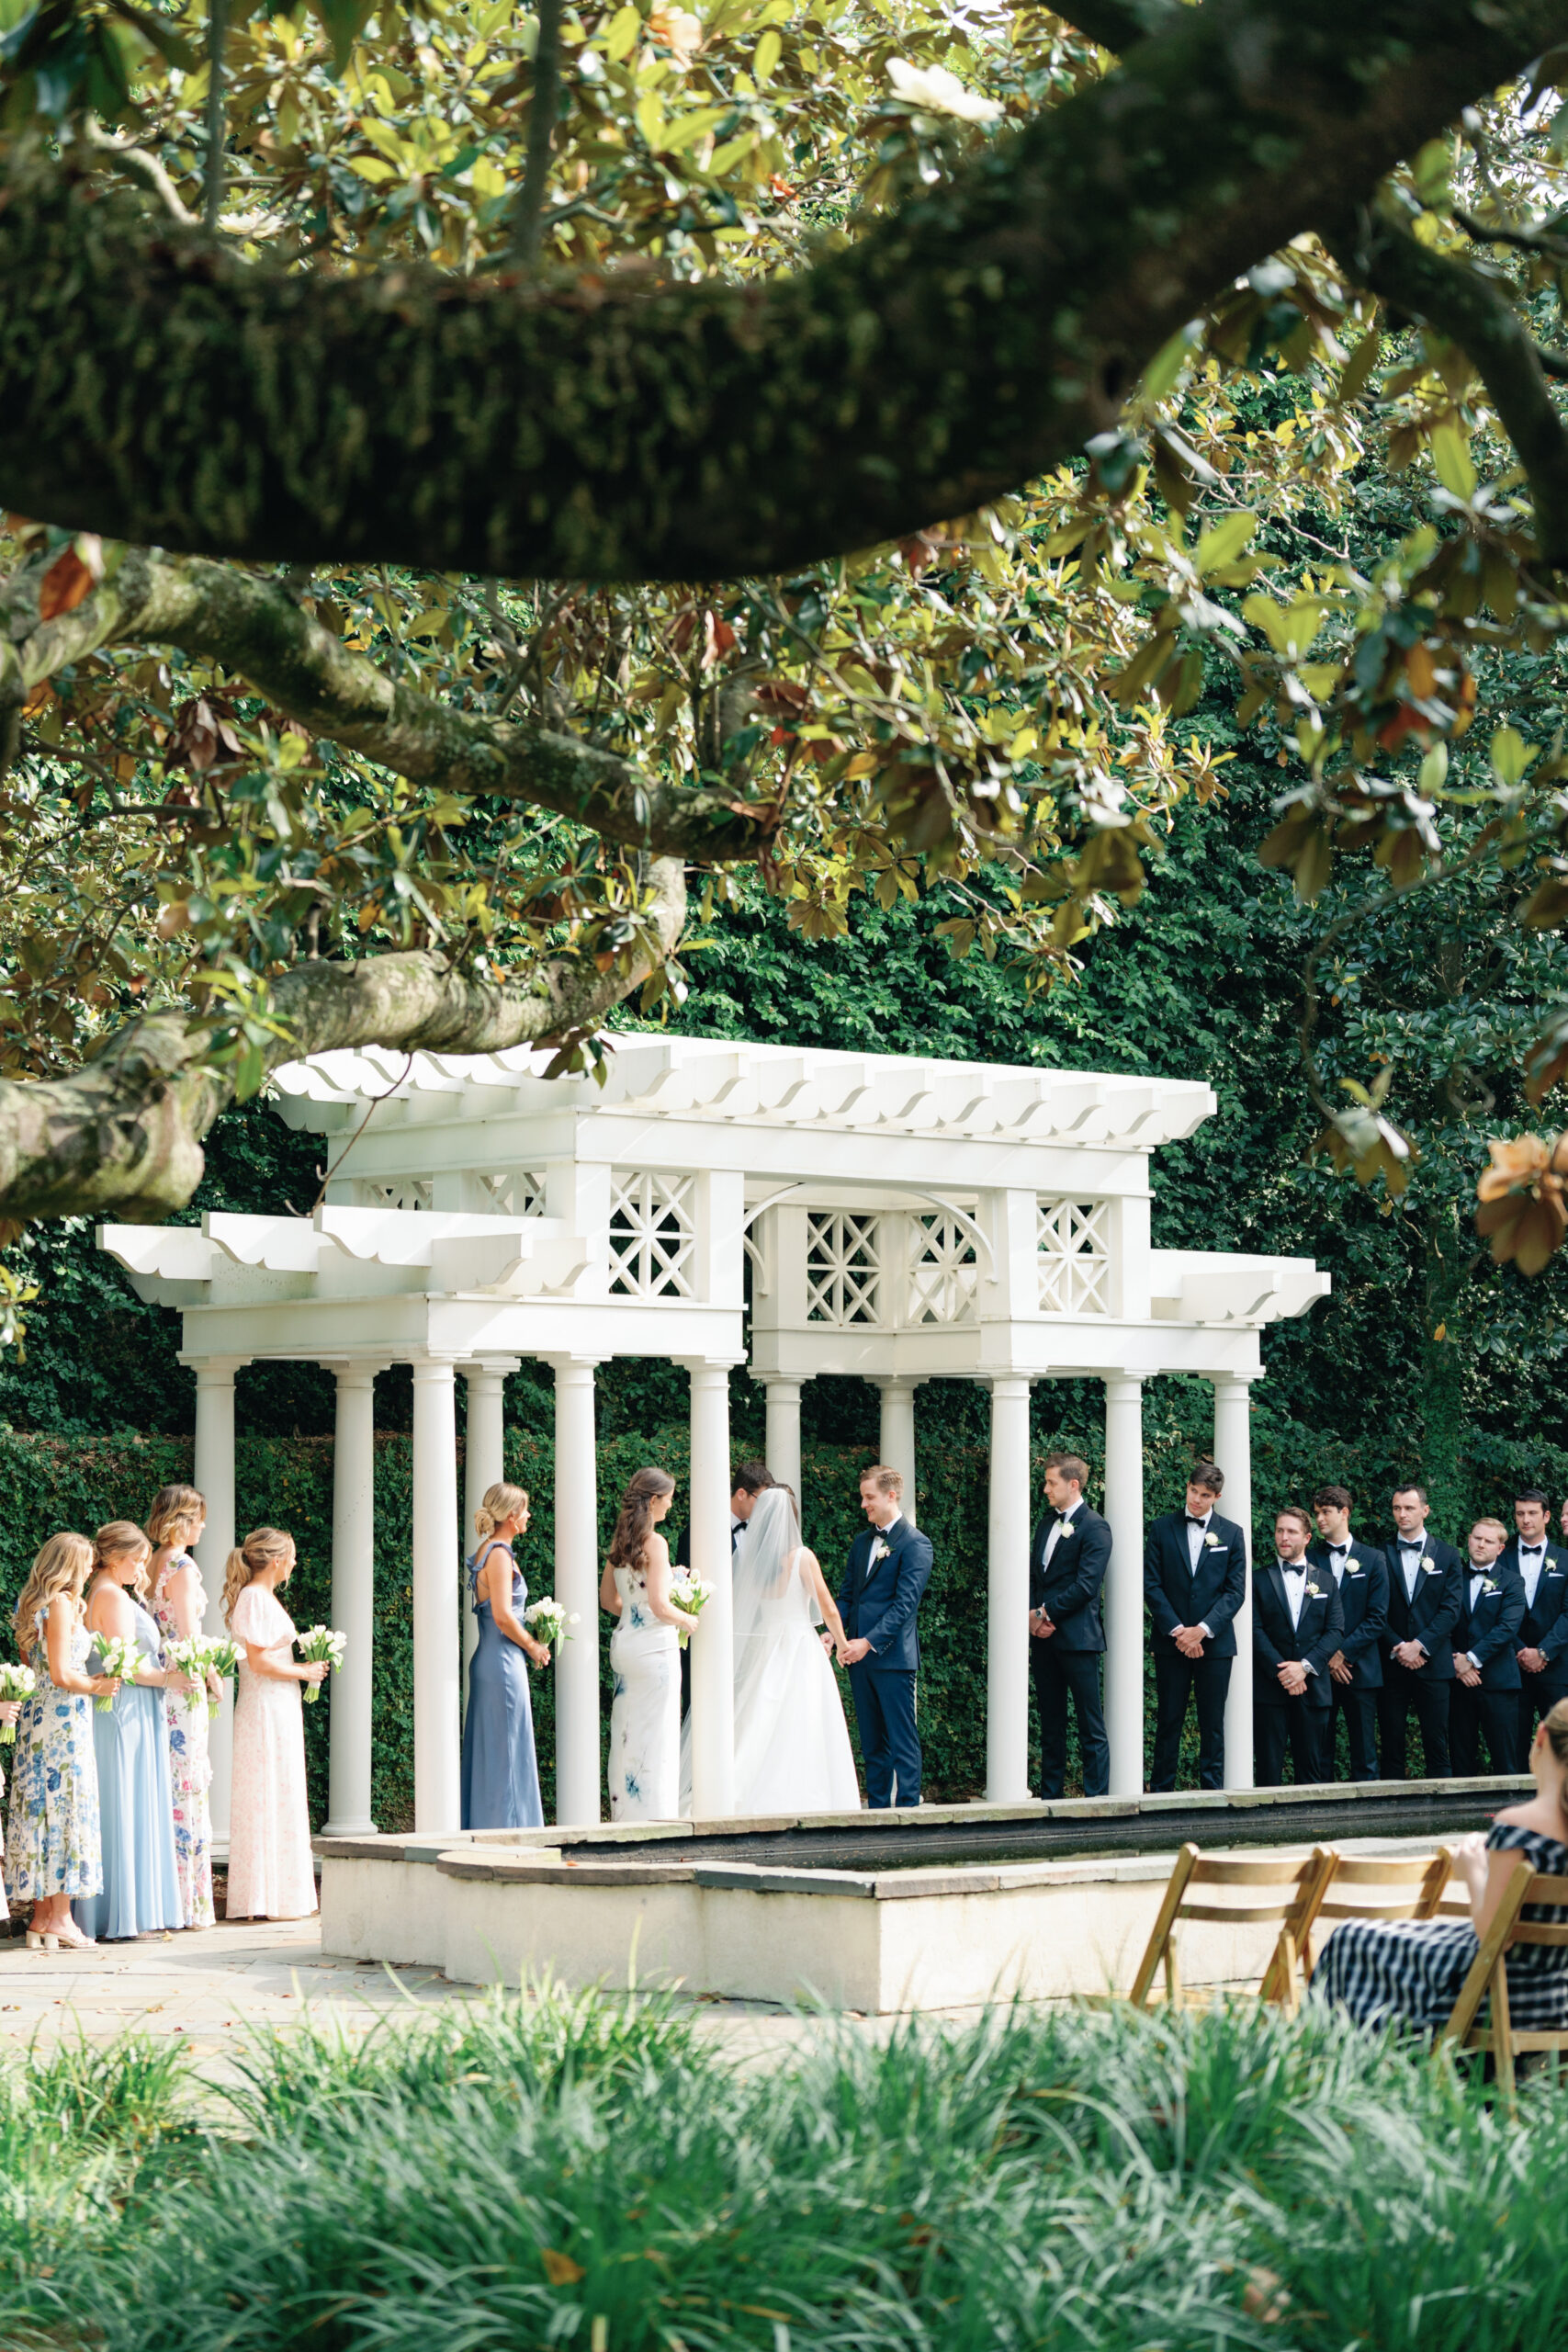 Wedding ceremony under the white arbor in the garden at William Aiken House. 